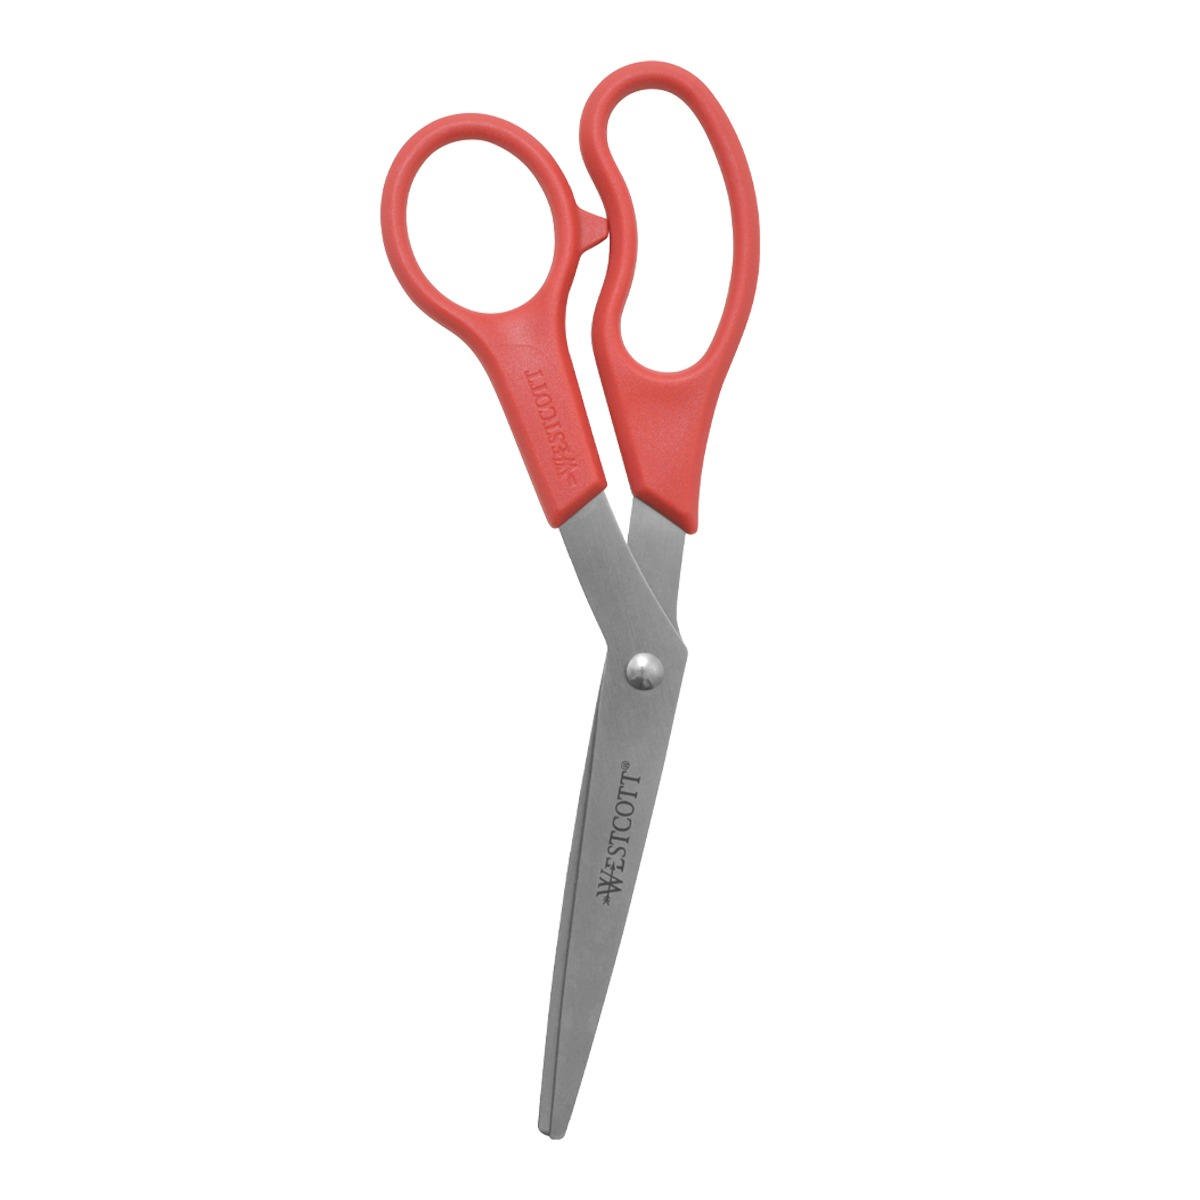 Westcott 8" Bent All Purpose Value Scissors, Red (10703)